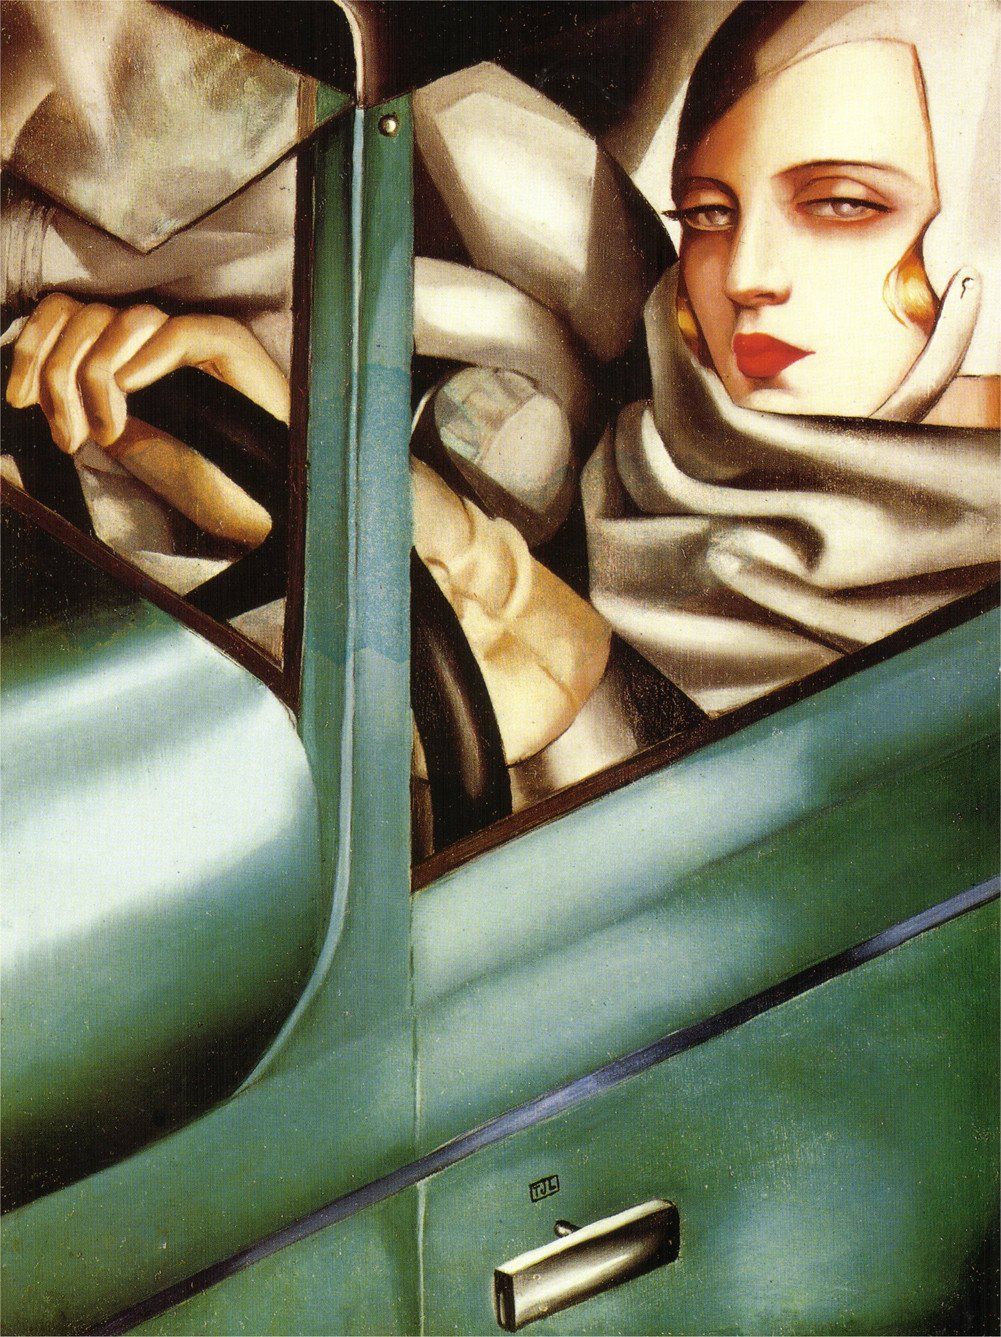 The original Self Portrait in the Green Bugatti by Tamara de Lempicka